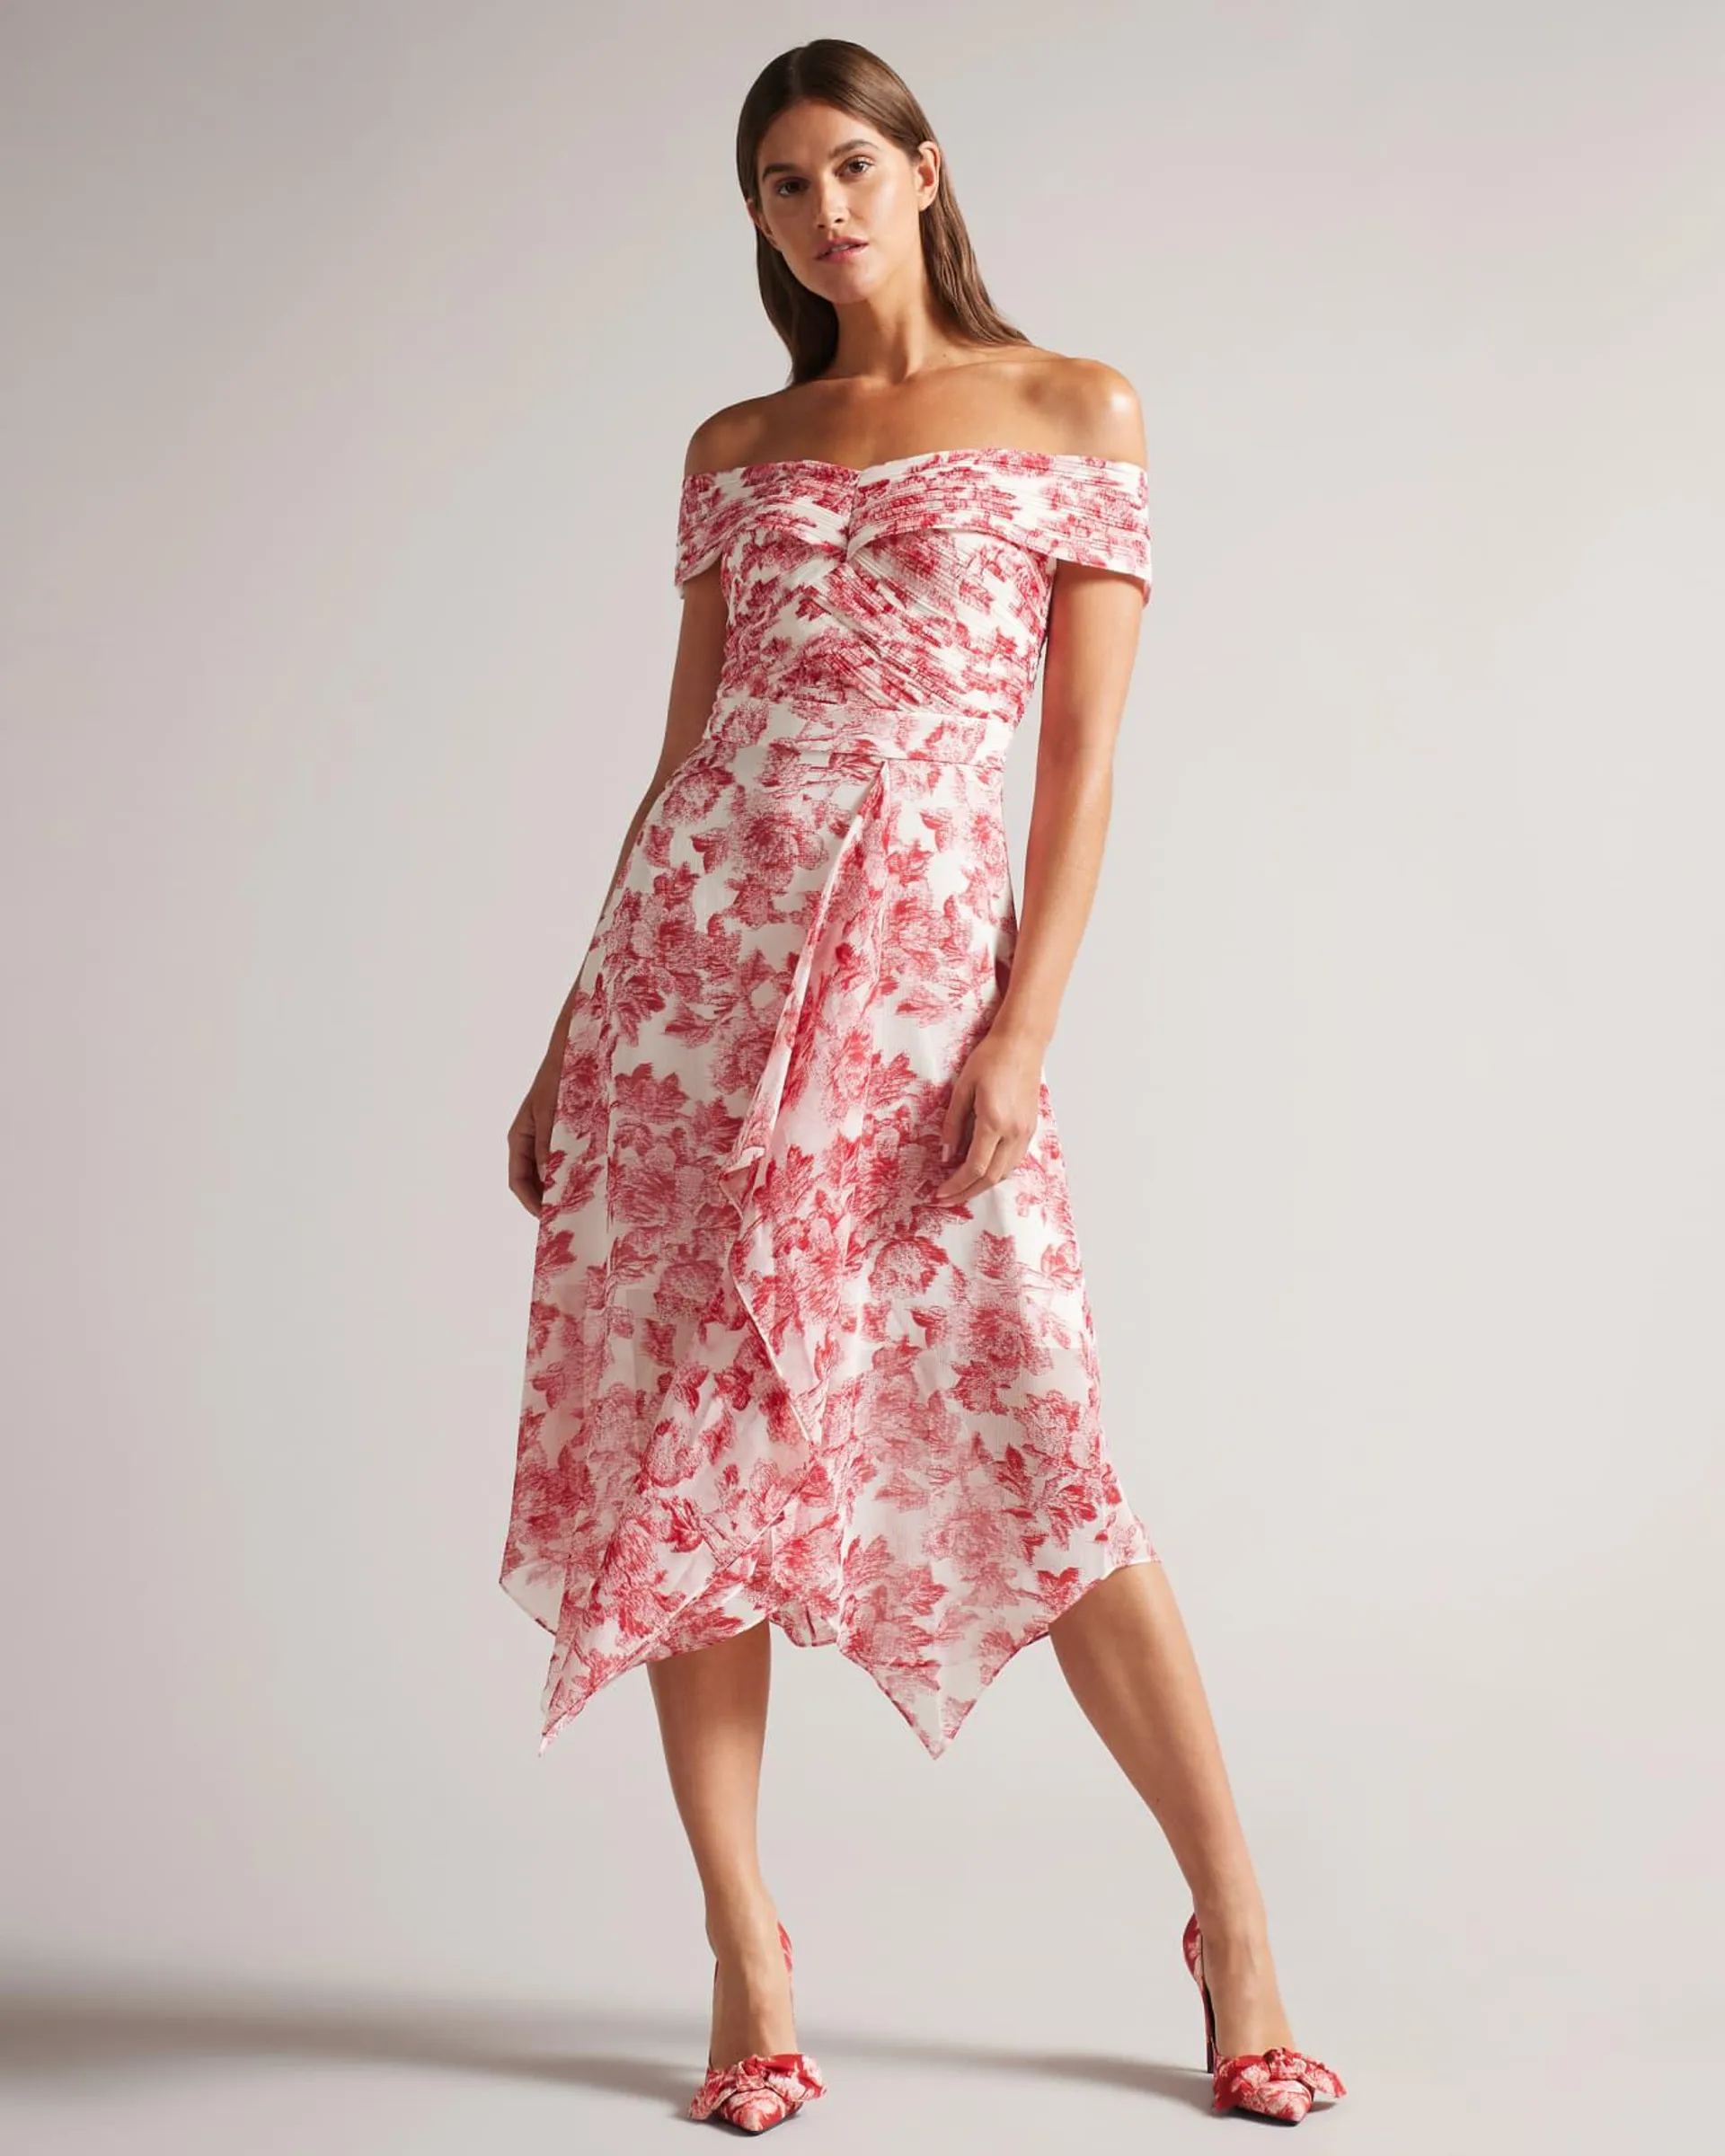 Bardot Midi Dress with Ruffle Skirt